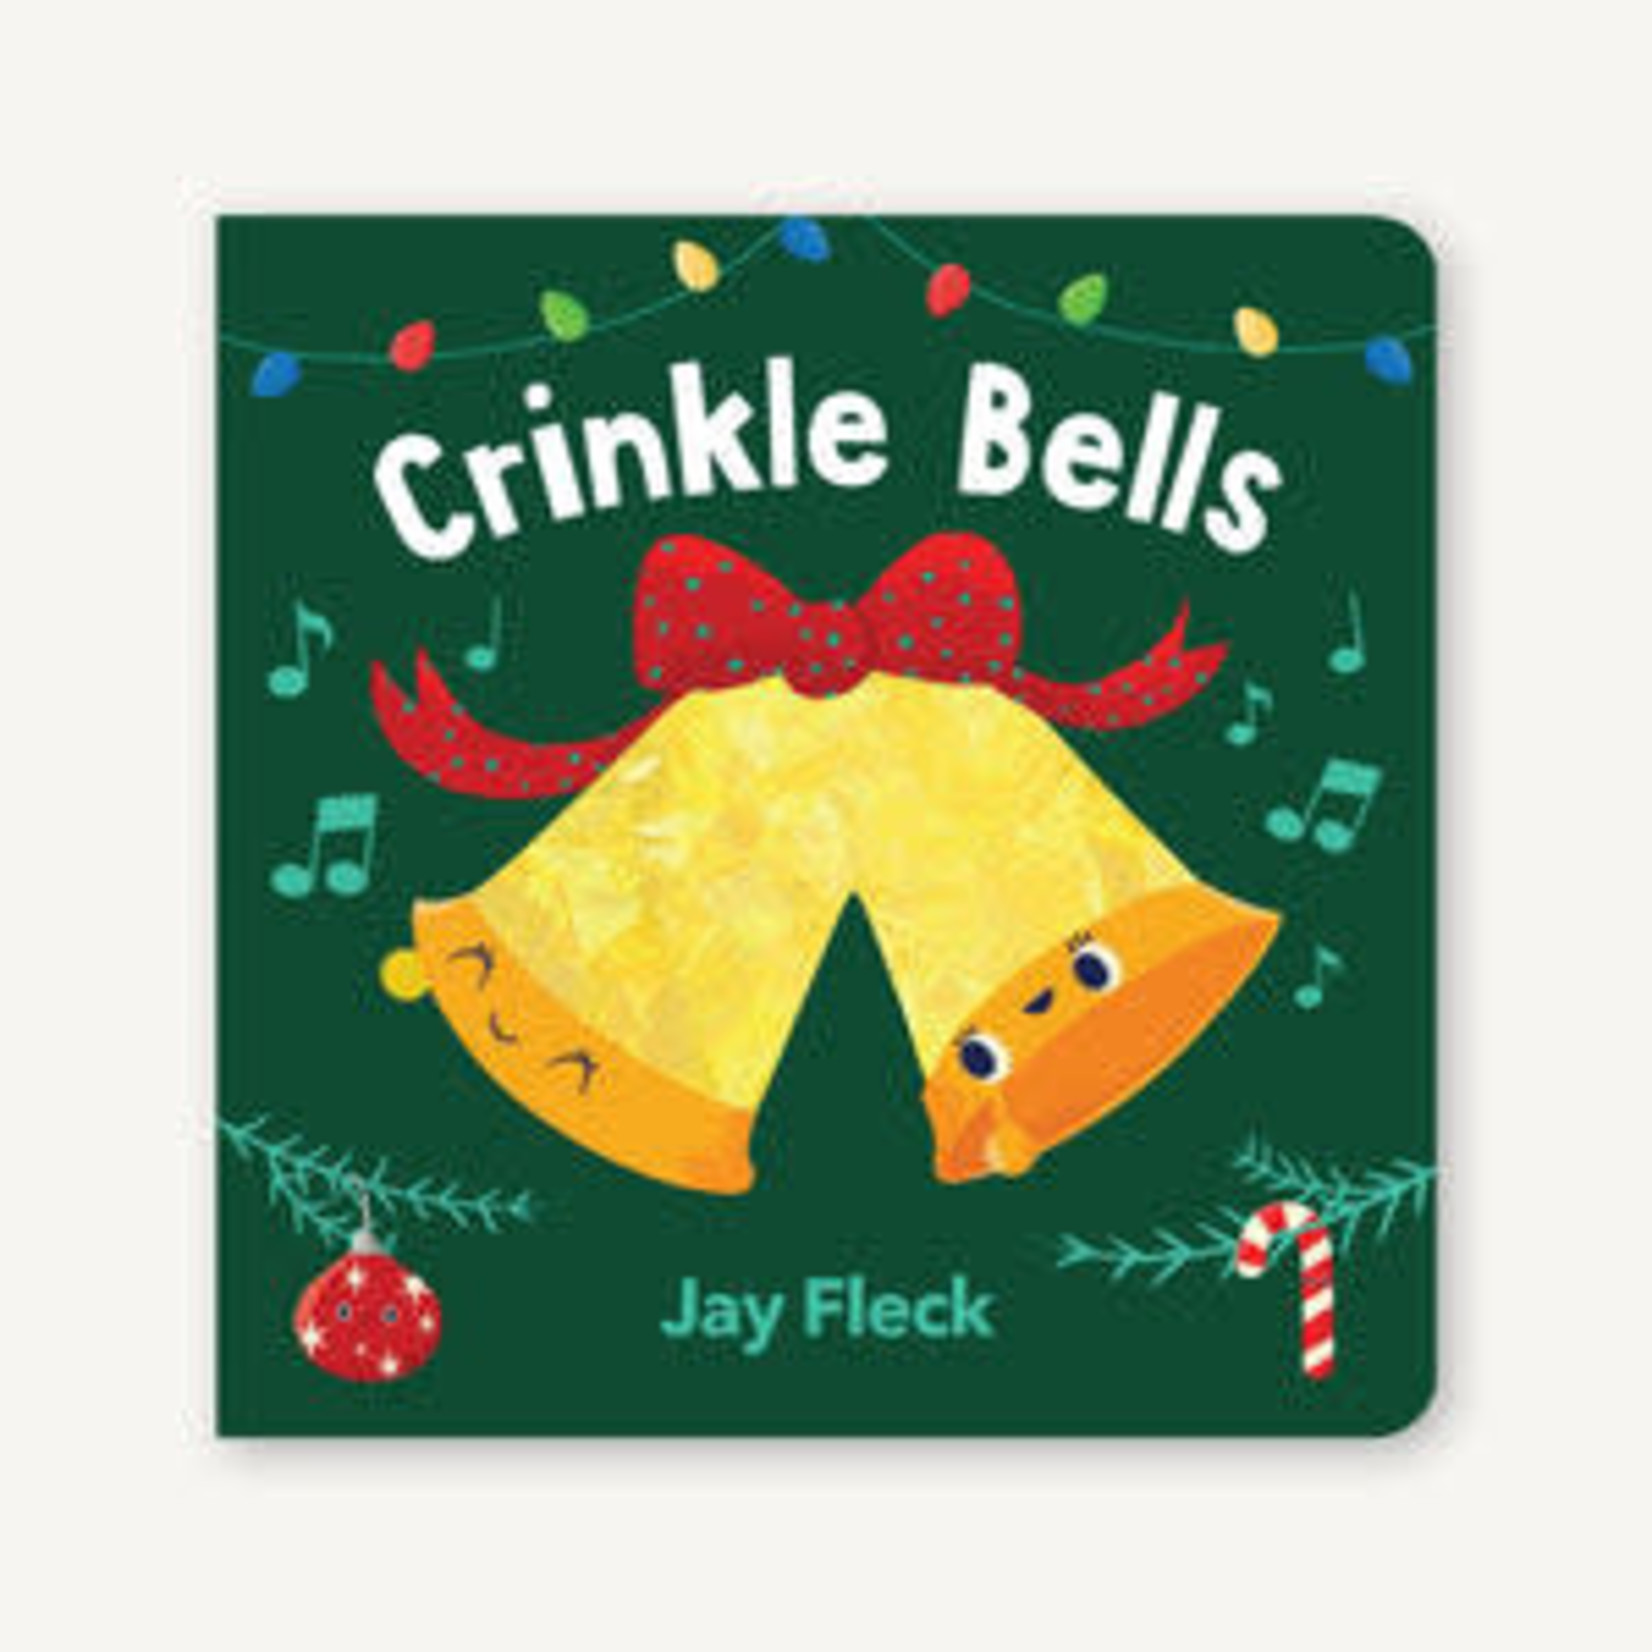 Crinkle Bells Book